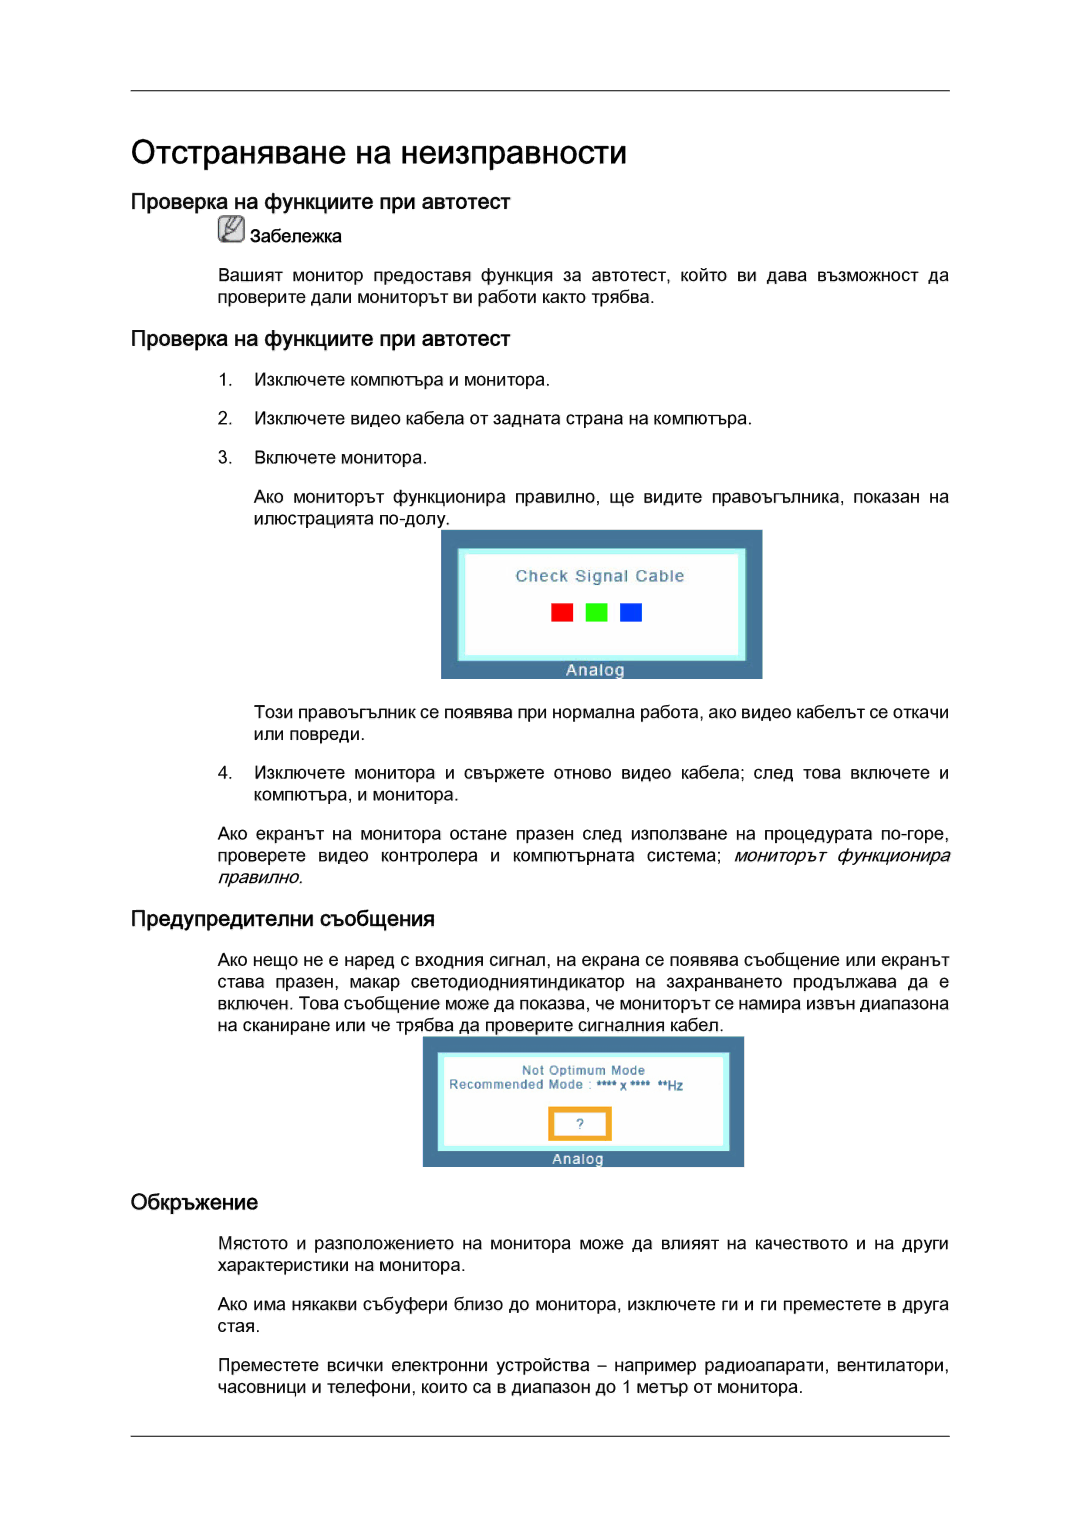 Samsung LS24KIQRFV/EDC, LS24KIVKBQ/EDC manual Проверка на функциите при автотест, Предупредителни съобщения, Обкръжение 